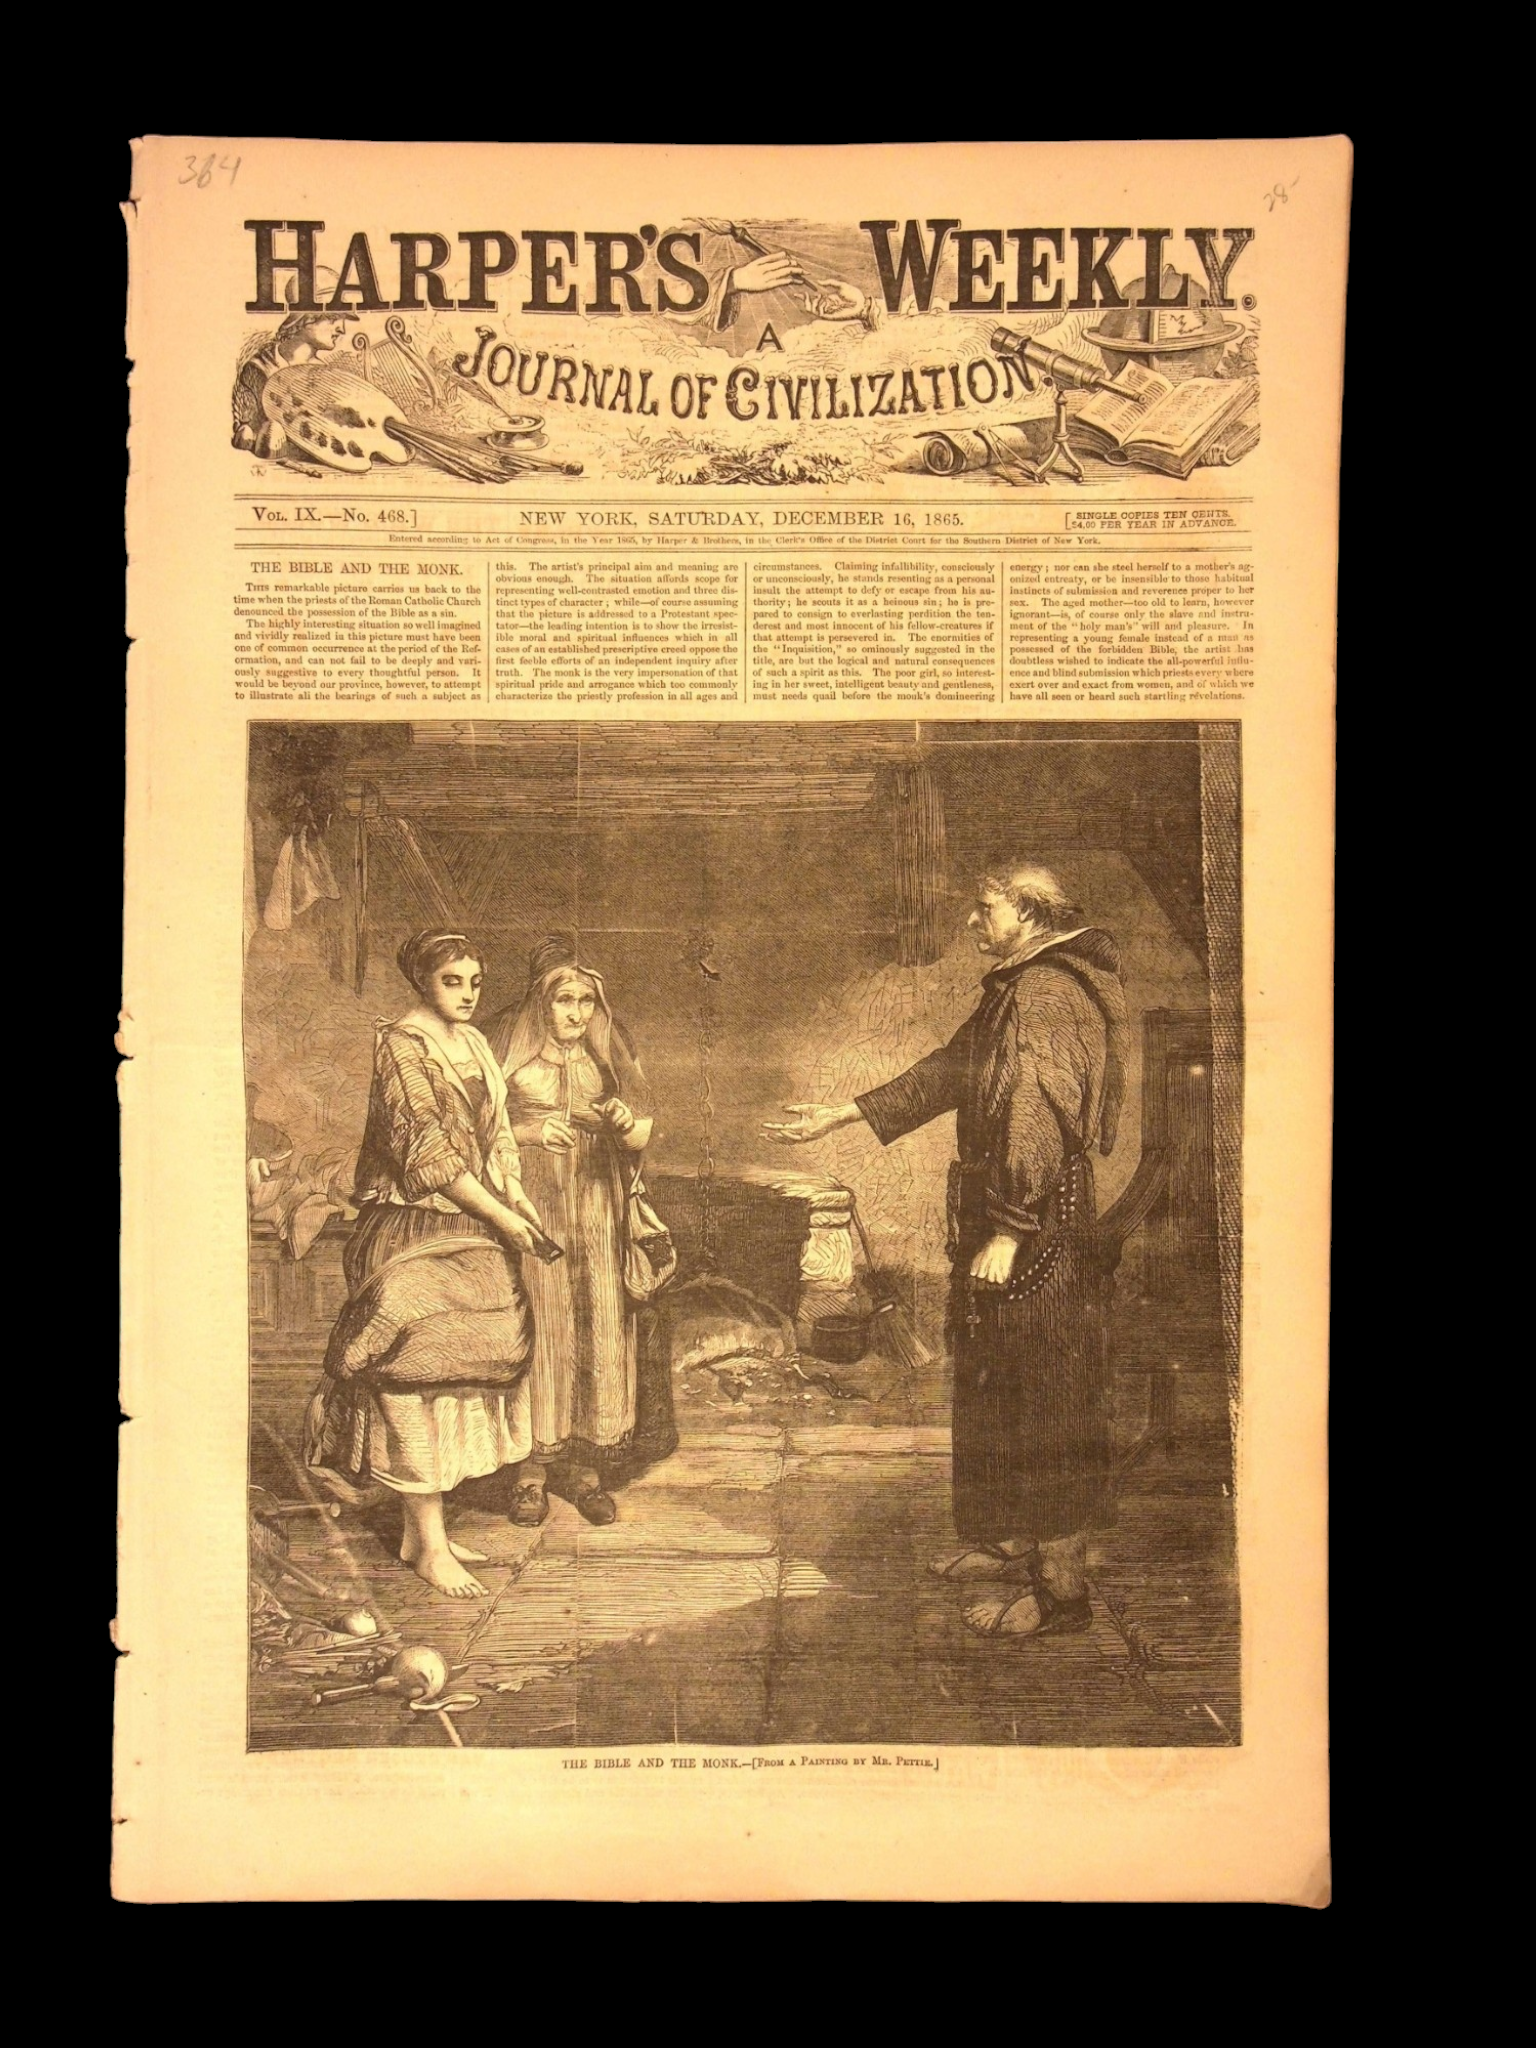 Harper's Weekly: Geneva Congress (International Law), Battle of Trafalgar — Nov. 14, 1874